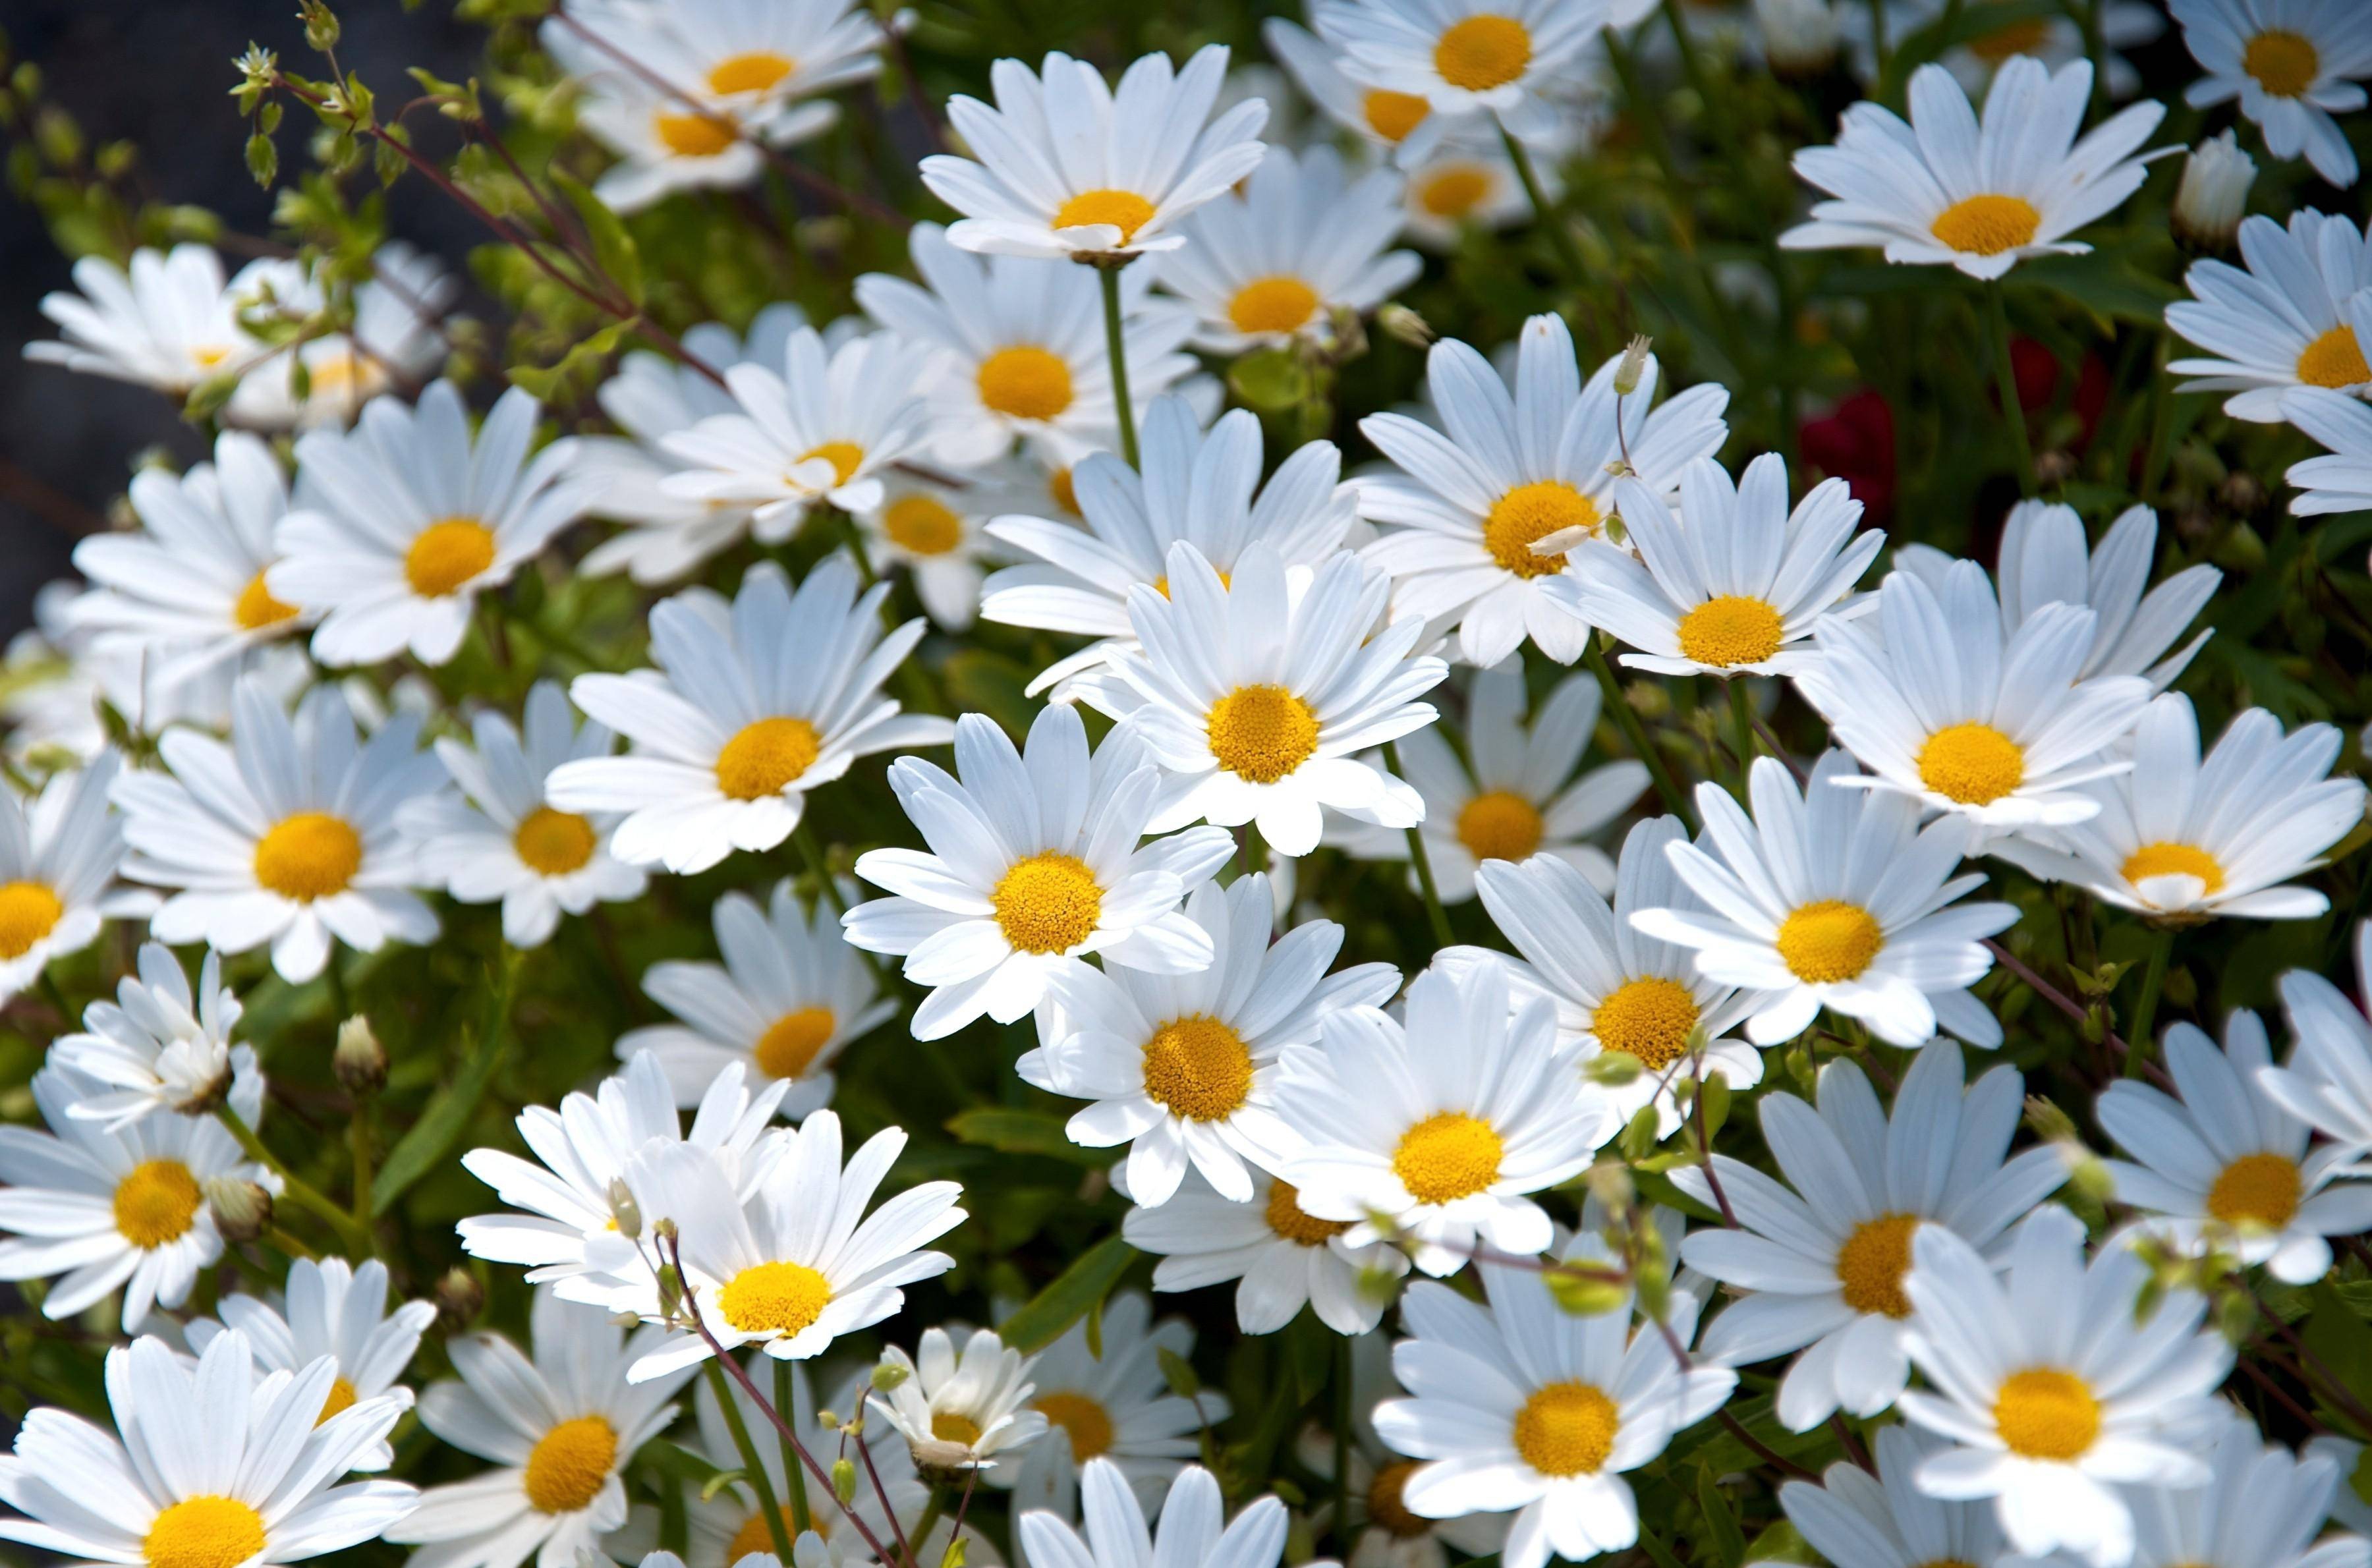 Wallpaper : daisies, flowers, sky, flower, close up 2700x1930 - goodfon - 1064018 - HD ...